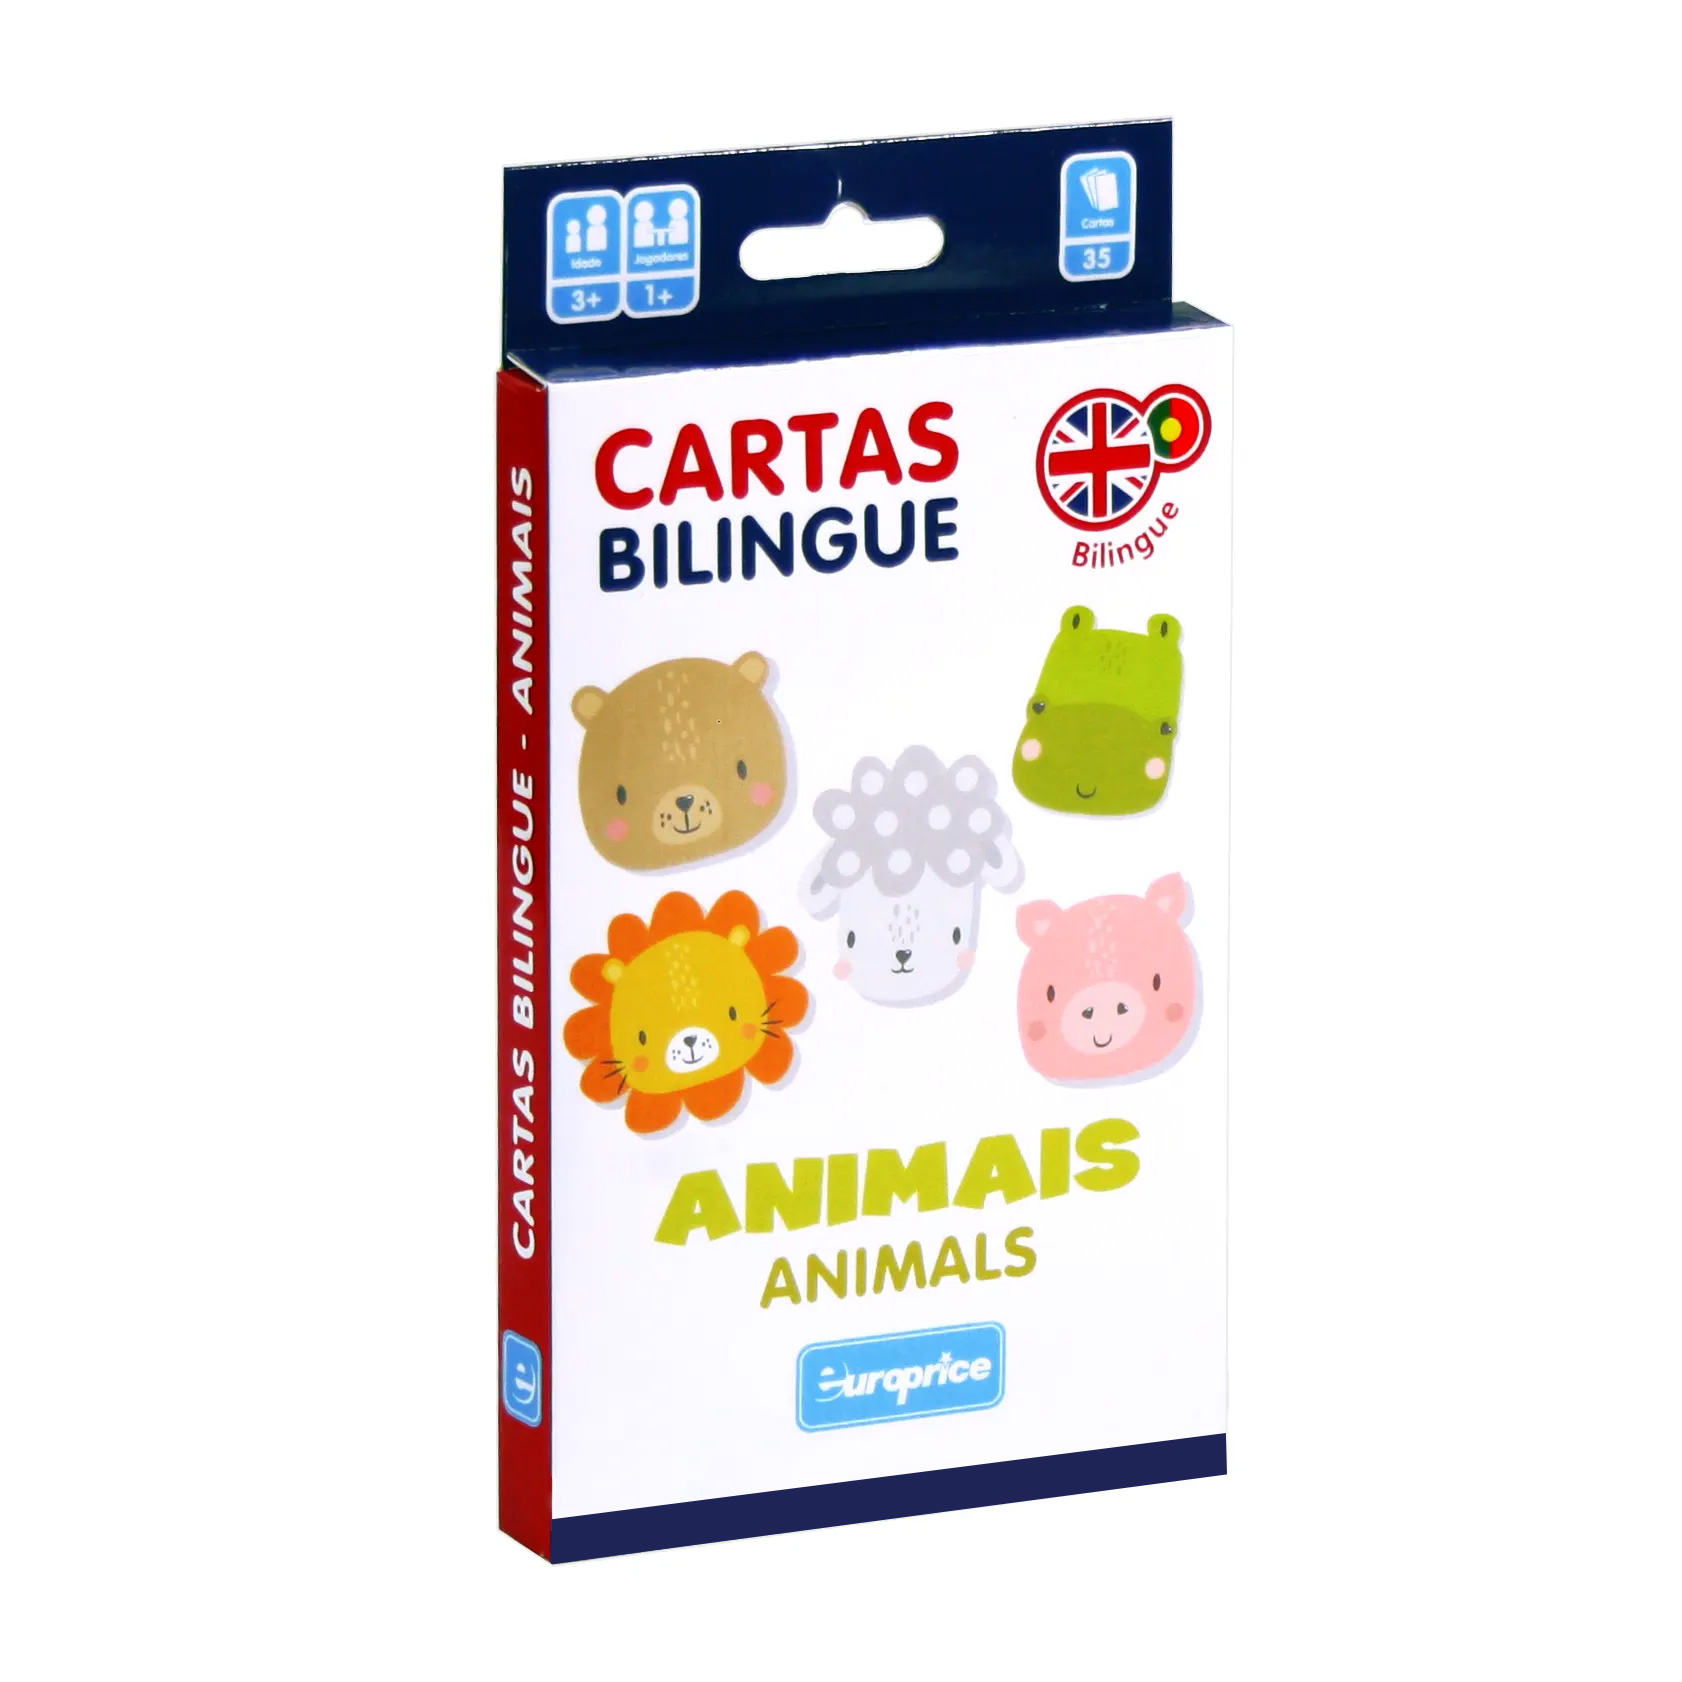 Caixa do jogo Cartas Bilingue - Animais. É uma caixa de cartas vertical, em tons de branco, vermelho e azul escuro, com caras de animais fofinhos a sorrir.